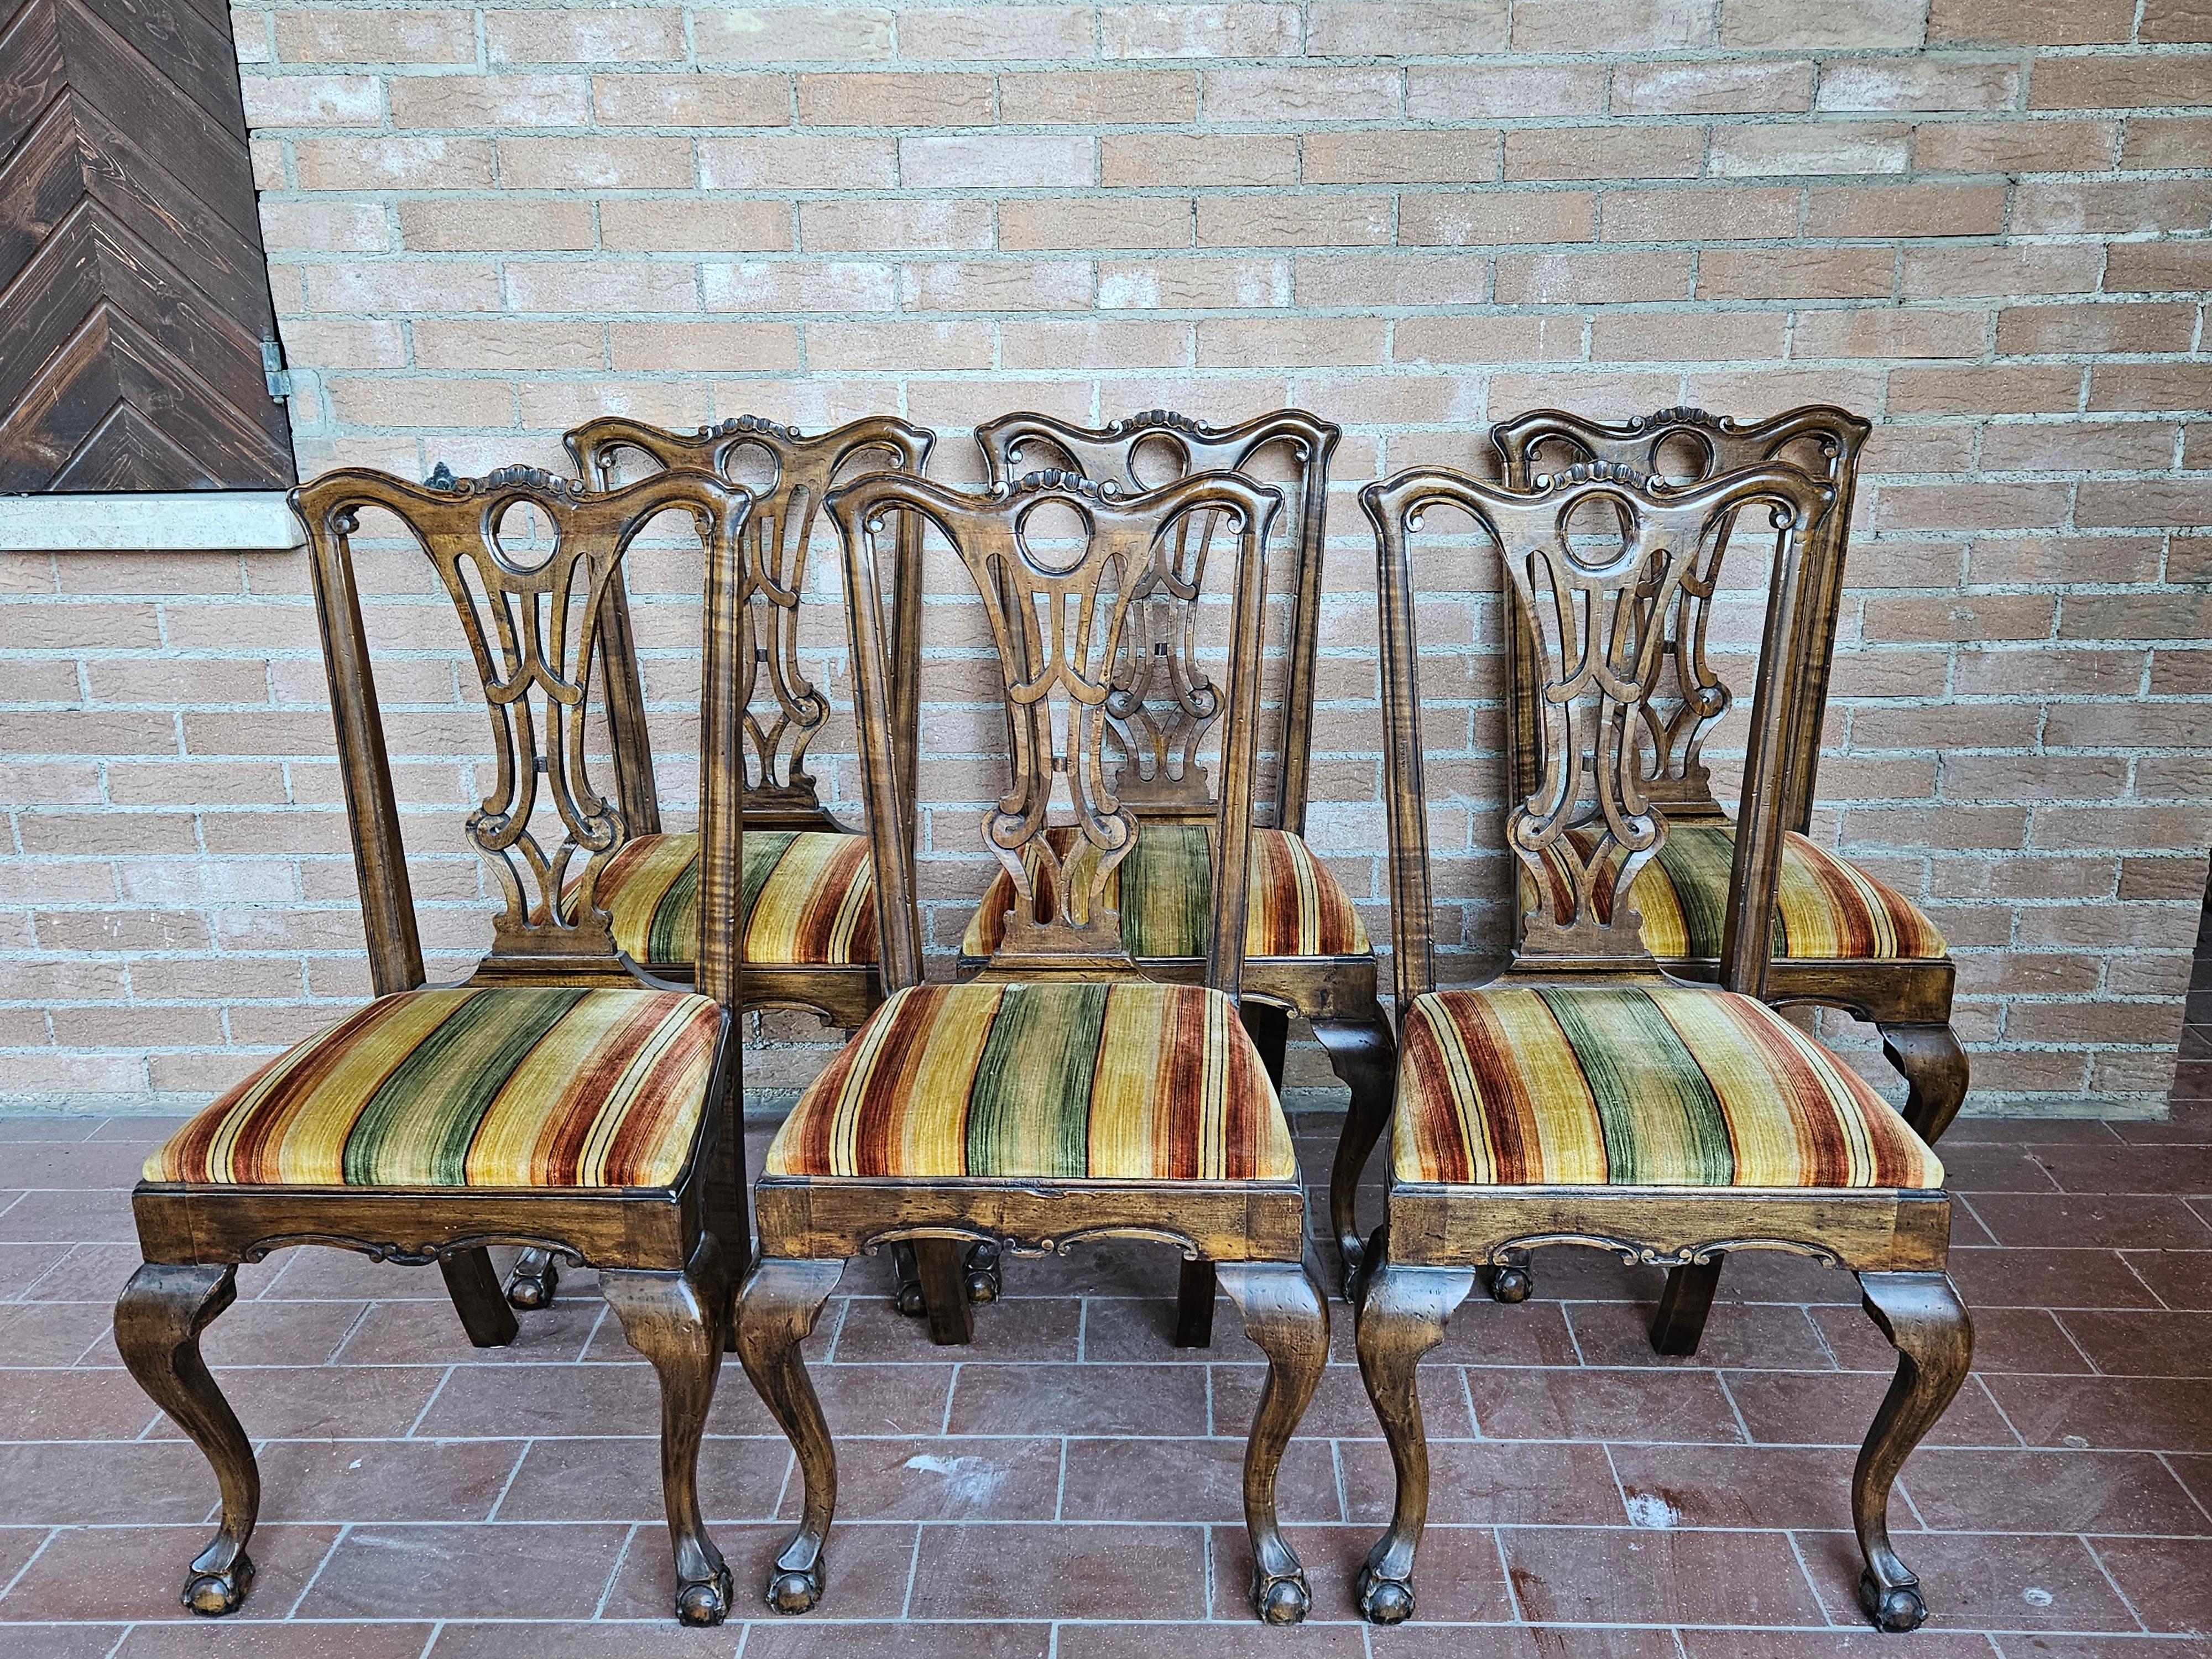 Set di sedie anni '30 in stile Chippendale con struttura in legno di noce e seduta imbottita in stoffa multicolore.

Si prestano per una sala da pranzo o per essere abbinate ad ambienti antichi e vintage.

Struttura intagliata con diverse